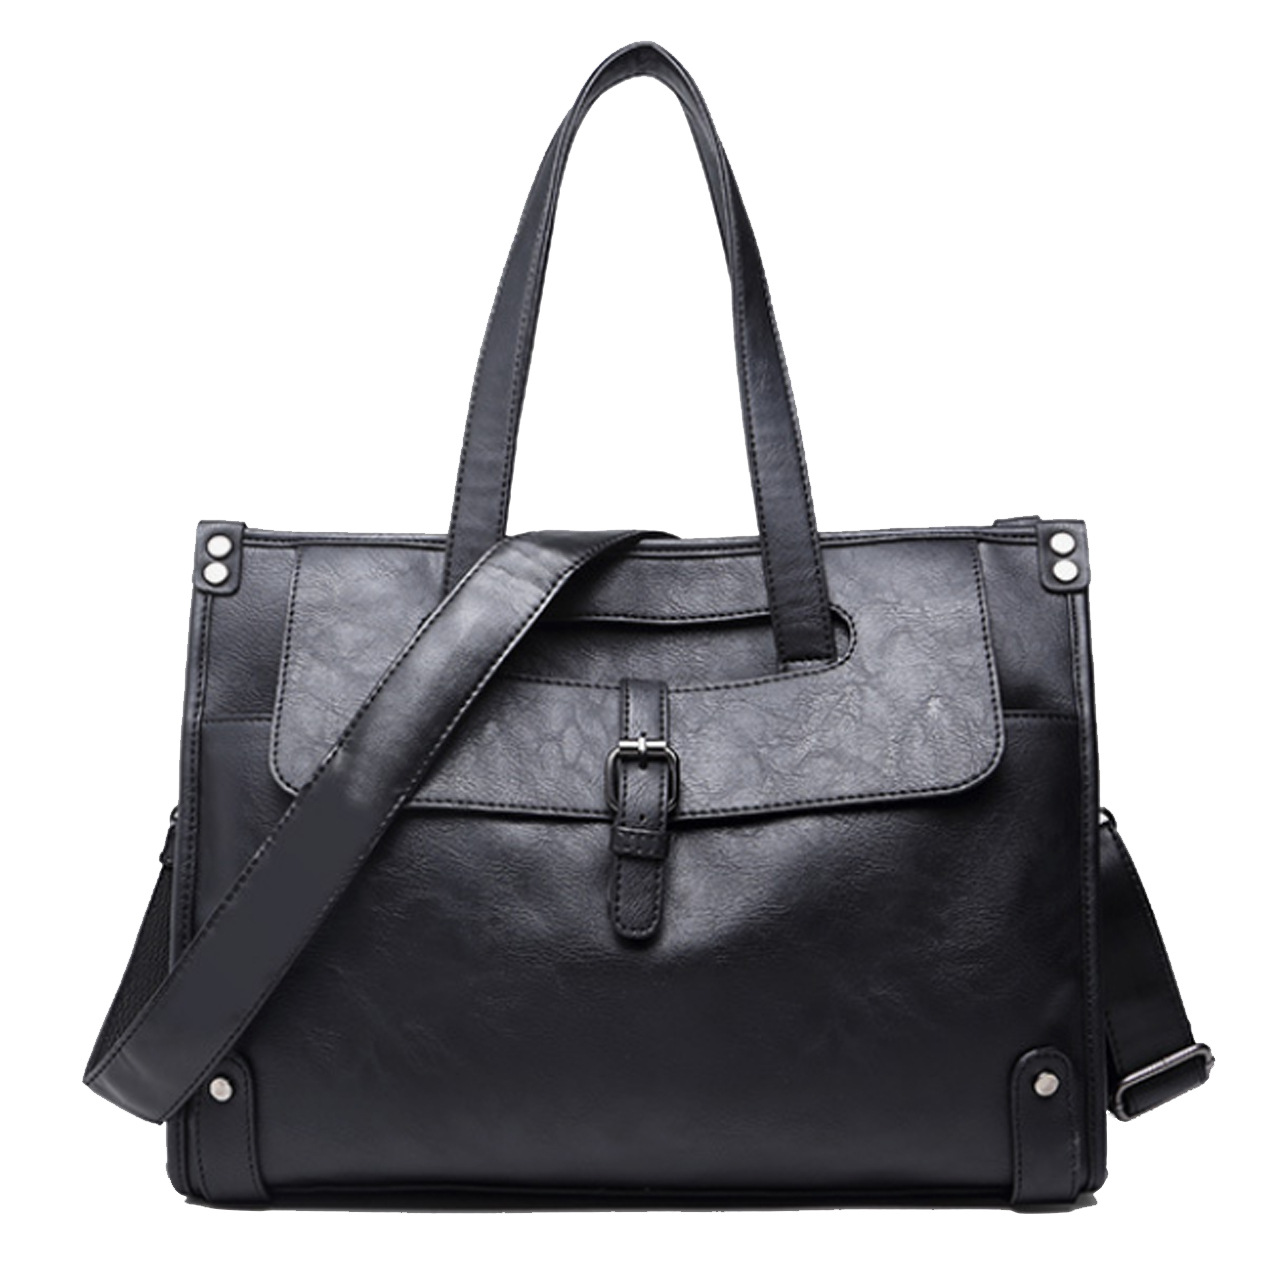 New Men's Bag Casual Handbag Shoulder Bag Large Capacity Men's Messenger Bag Pu Leather Business Travel Bag Men's Bag